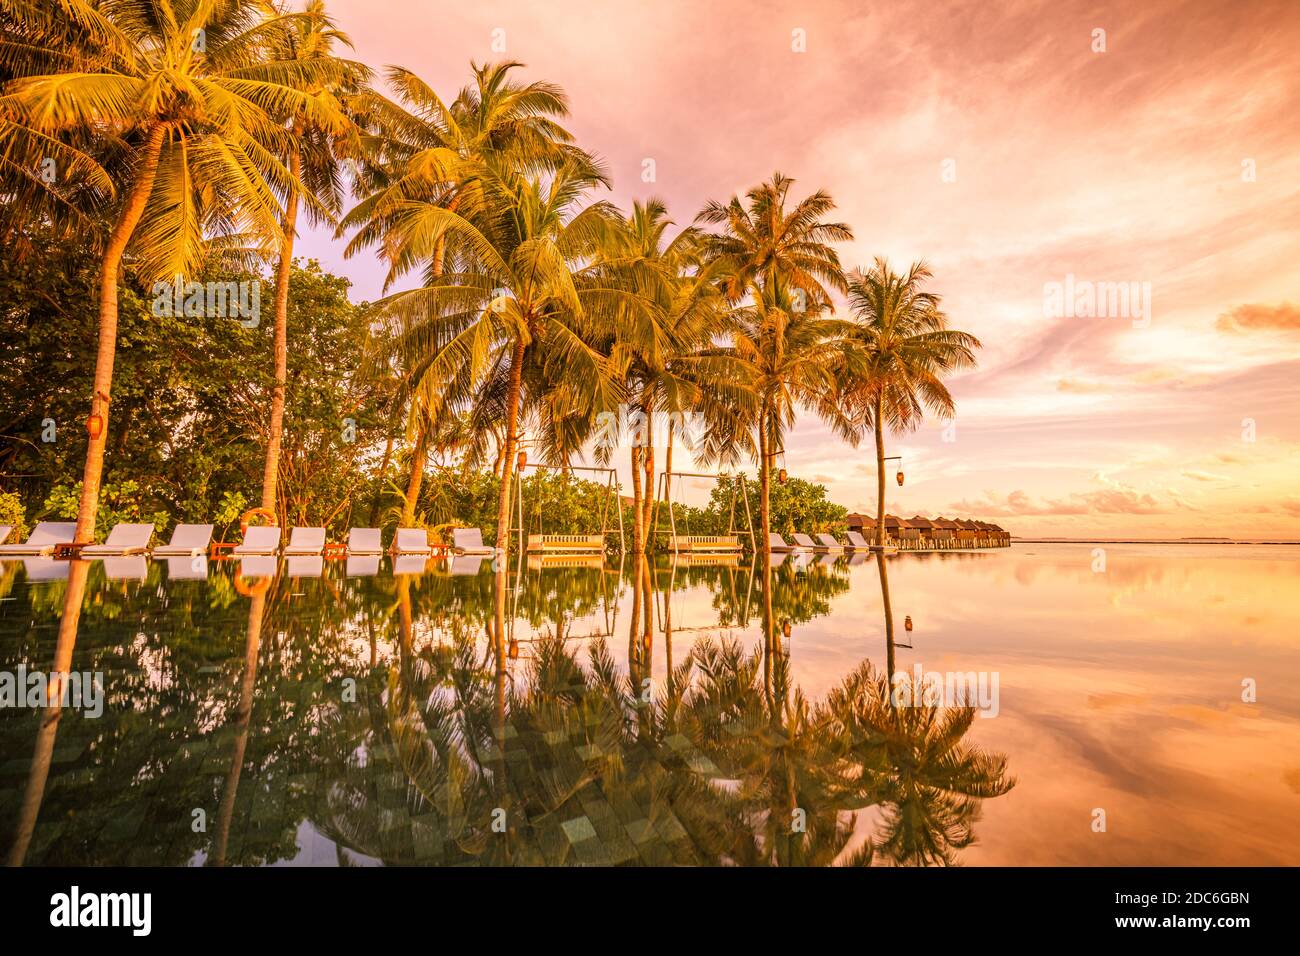 Palmen Stühle rund um Infinity-Pool in der Nähe Meer Ozean Strand bei Sonnenaufgang oder Sonnenuntergang Zeit. Für Urlaubsreisen und Urlaubskonzept, Sommerresort Stockfoto